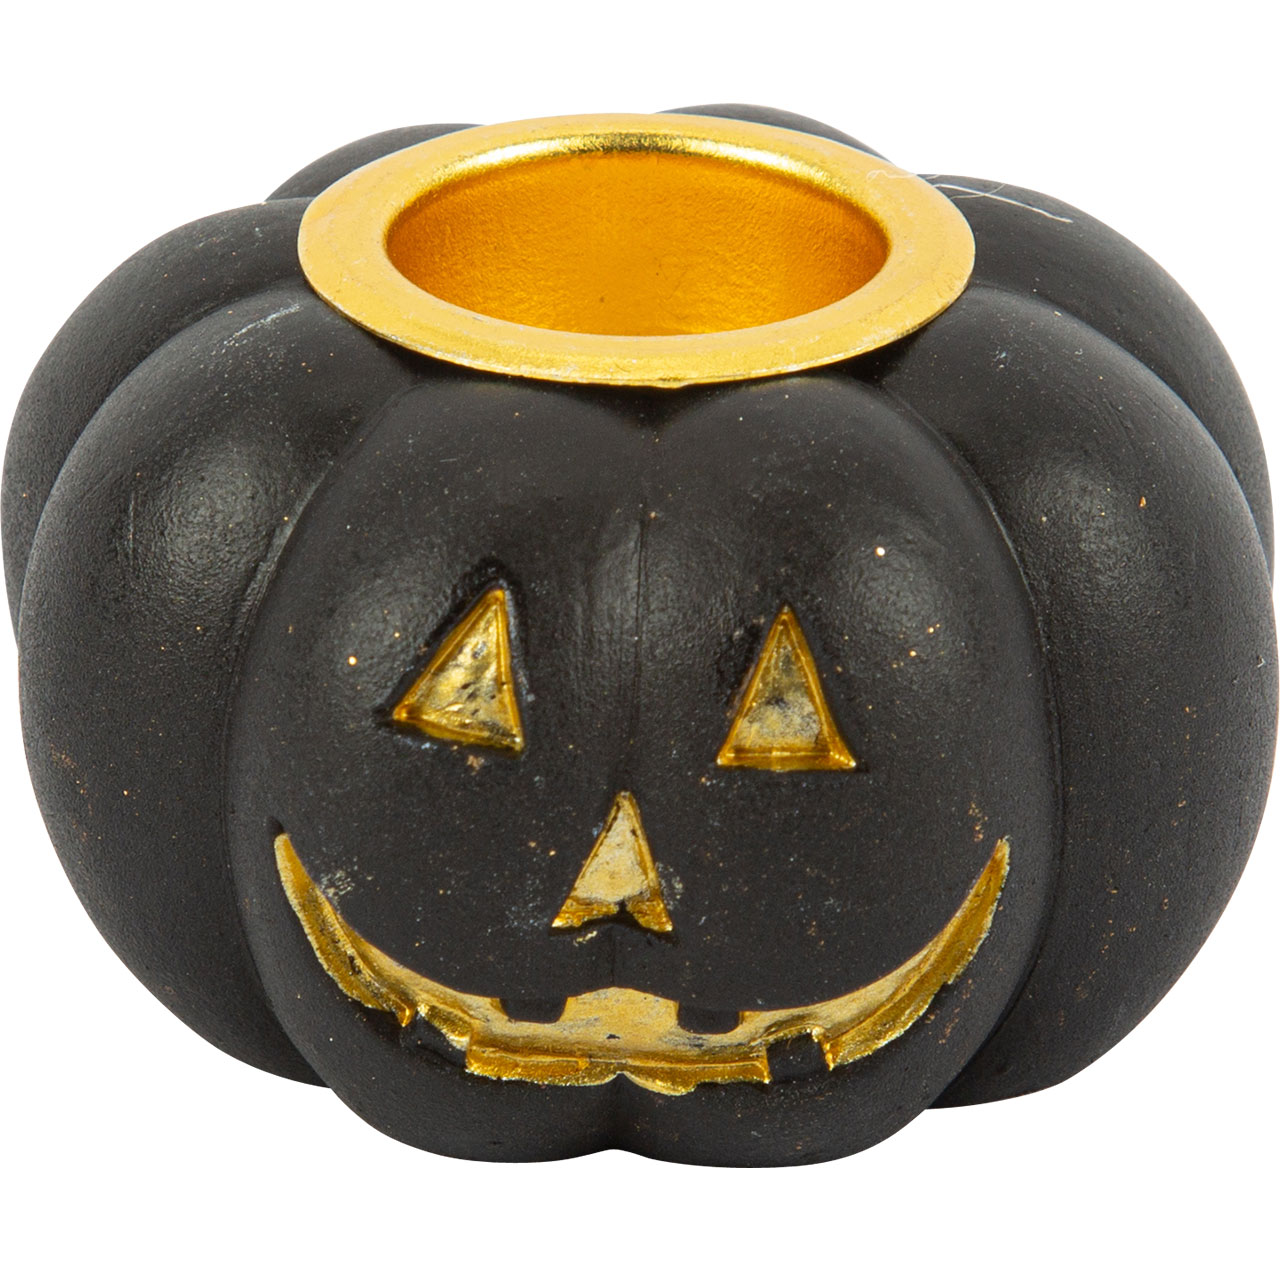 Candle Holder - Black & Gold Pumpkin